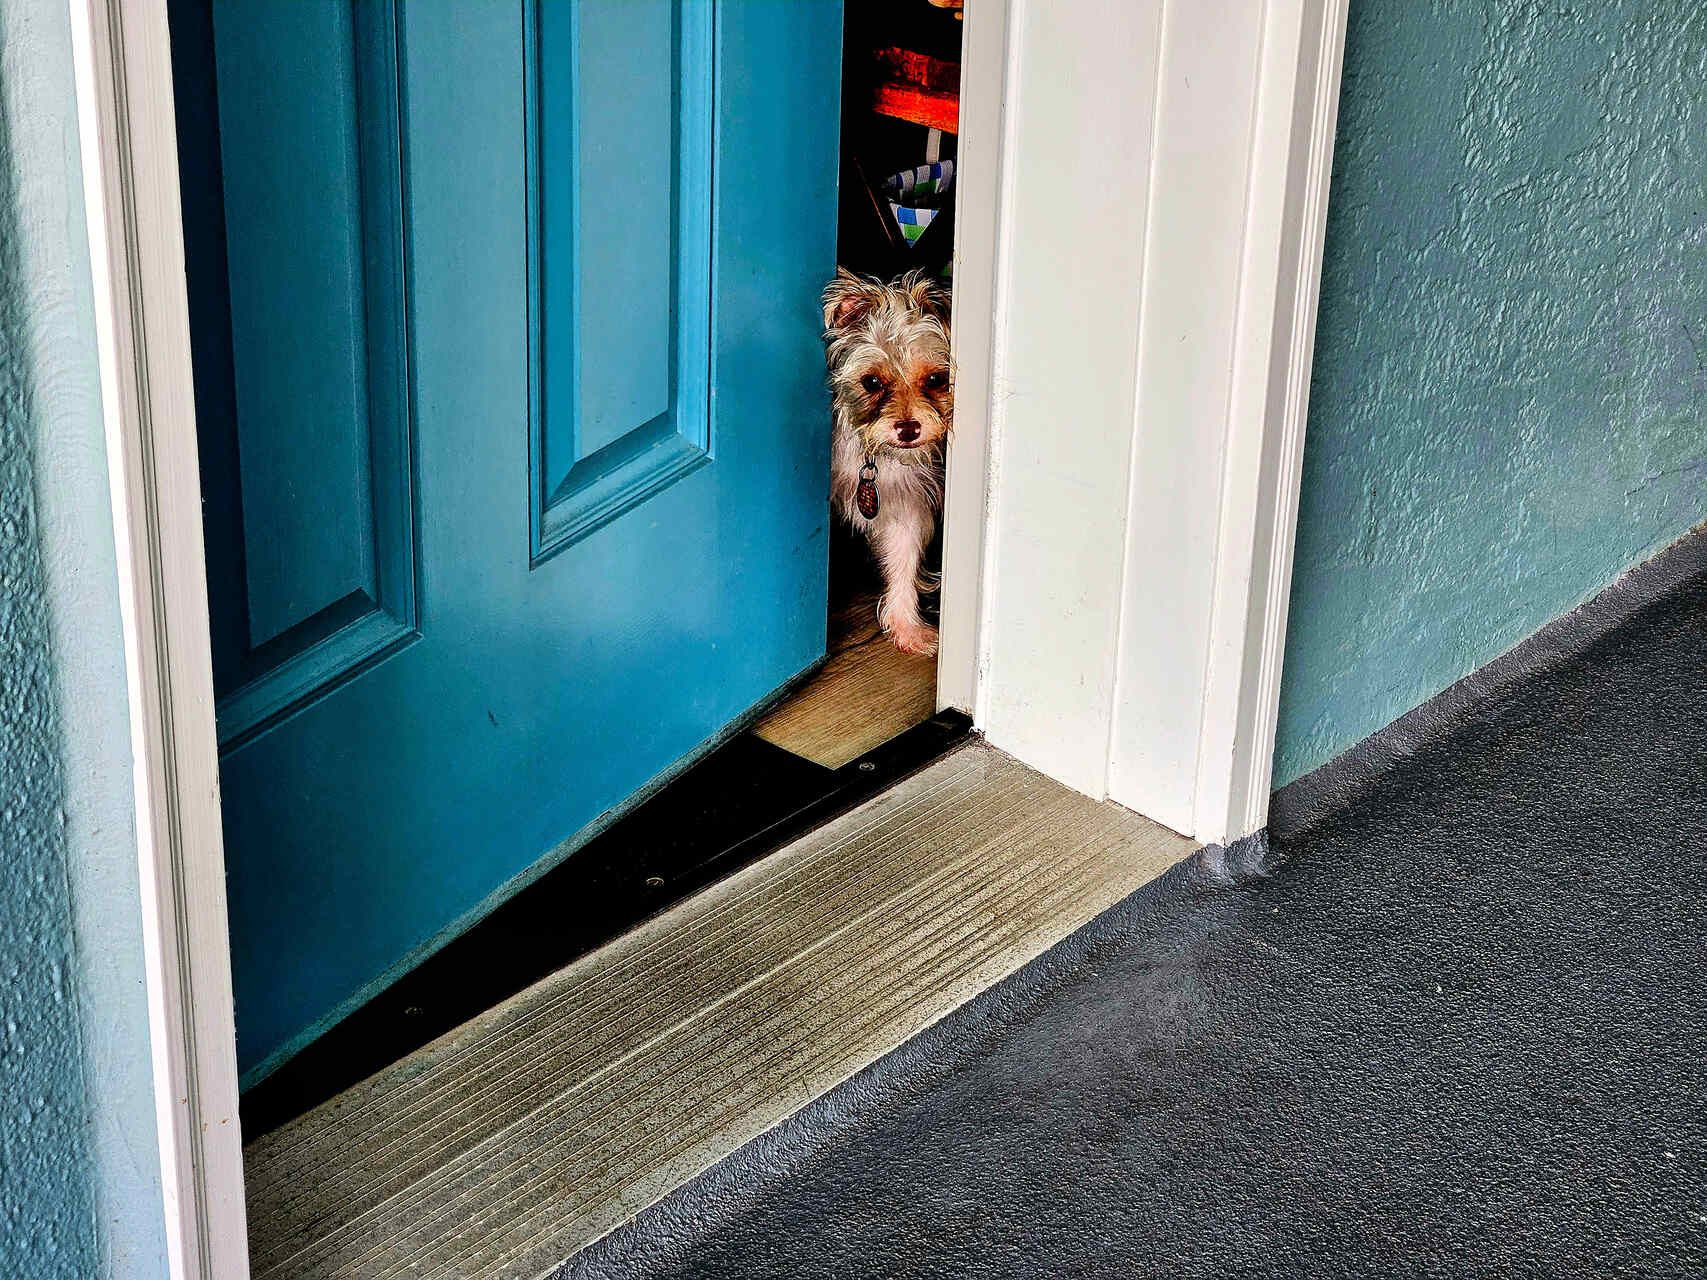 A puppy peeking outside an open blue door